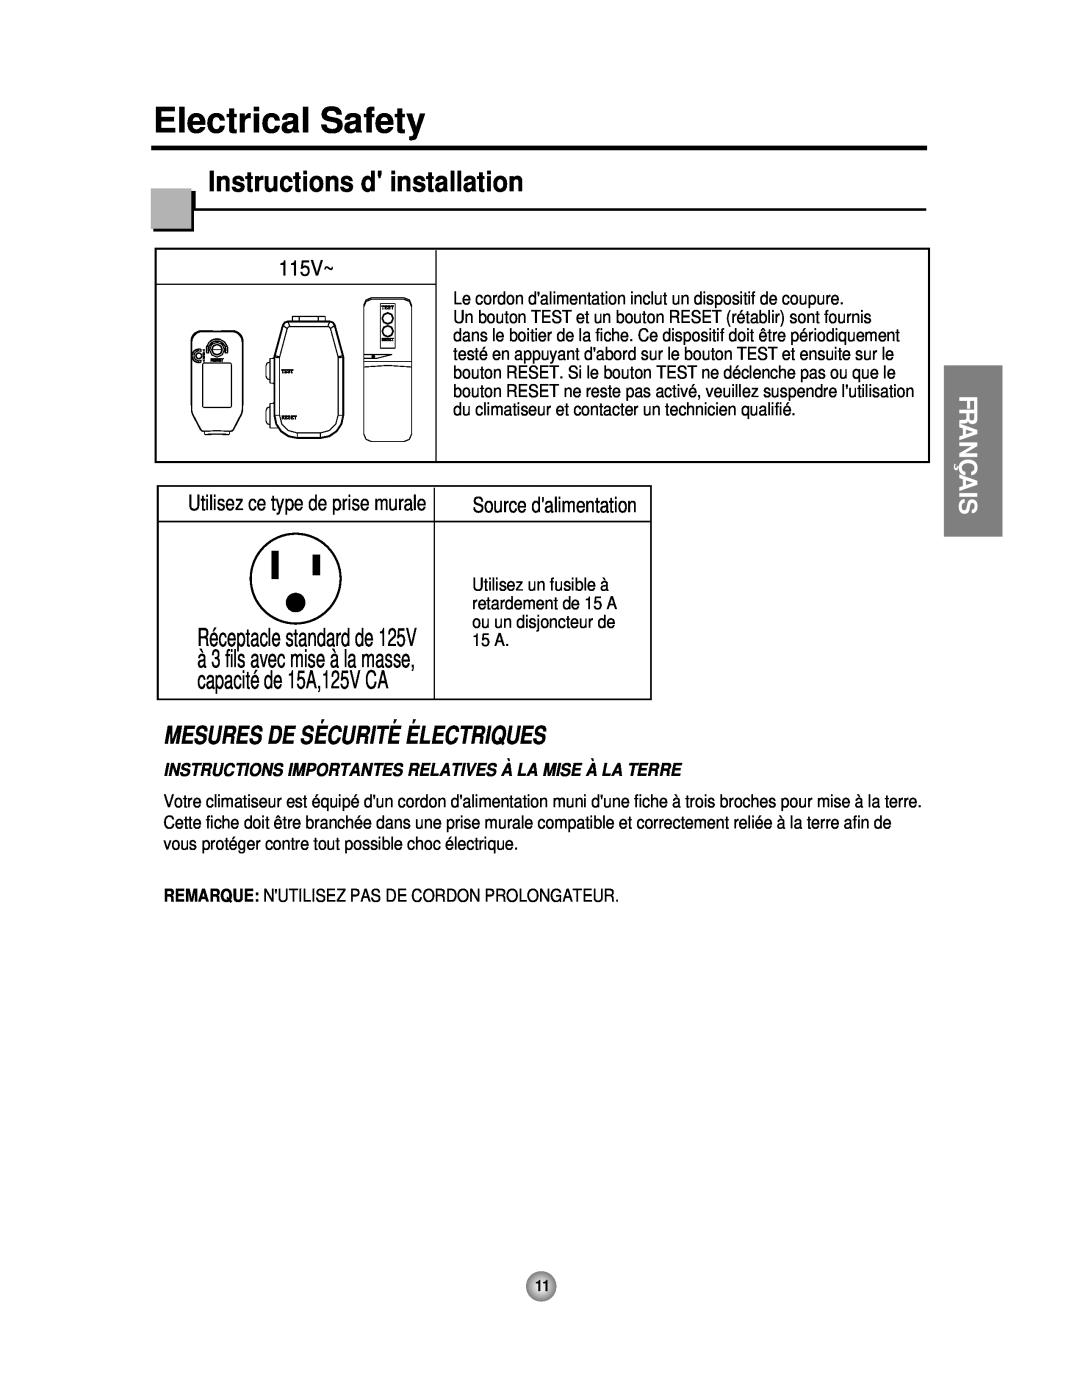 Friedrich CP06 manual Instructions d installation, Français, 115V~, capacité de 15A,125V CA, Electrical Safety 